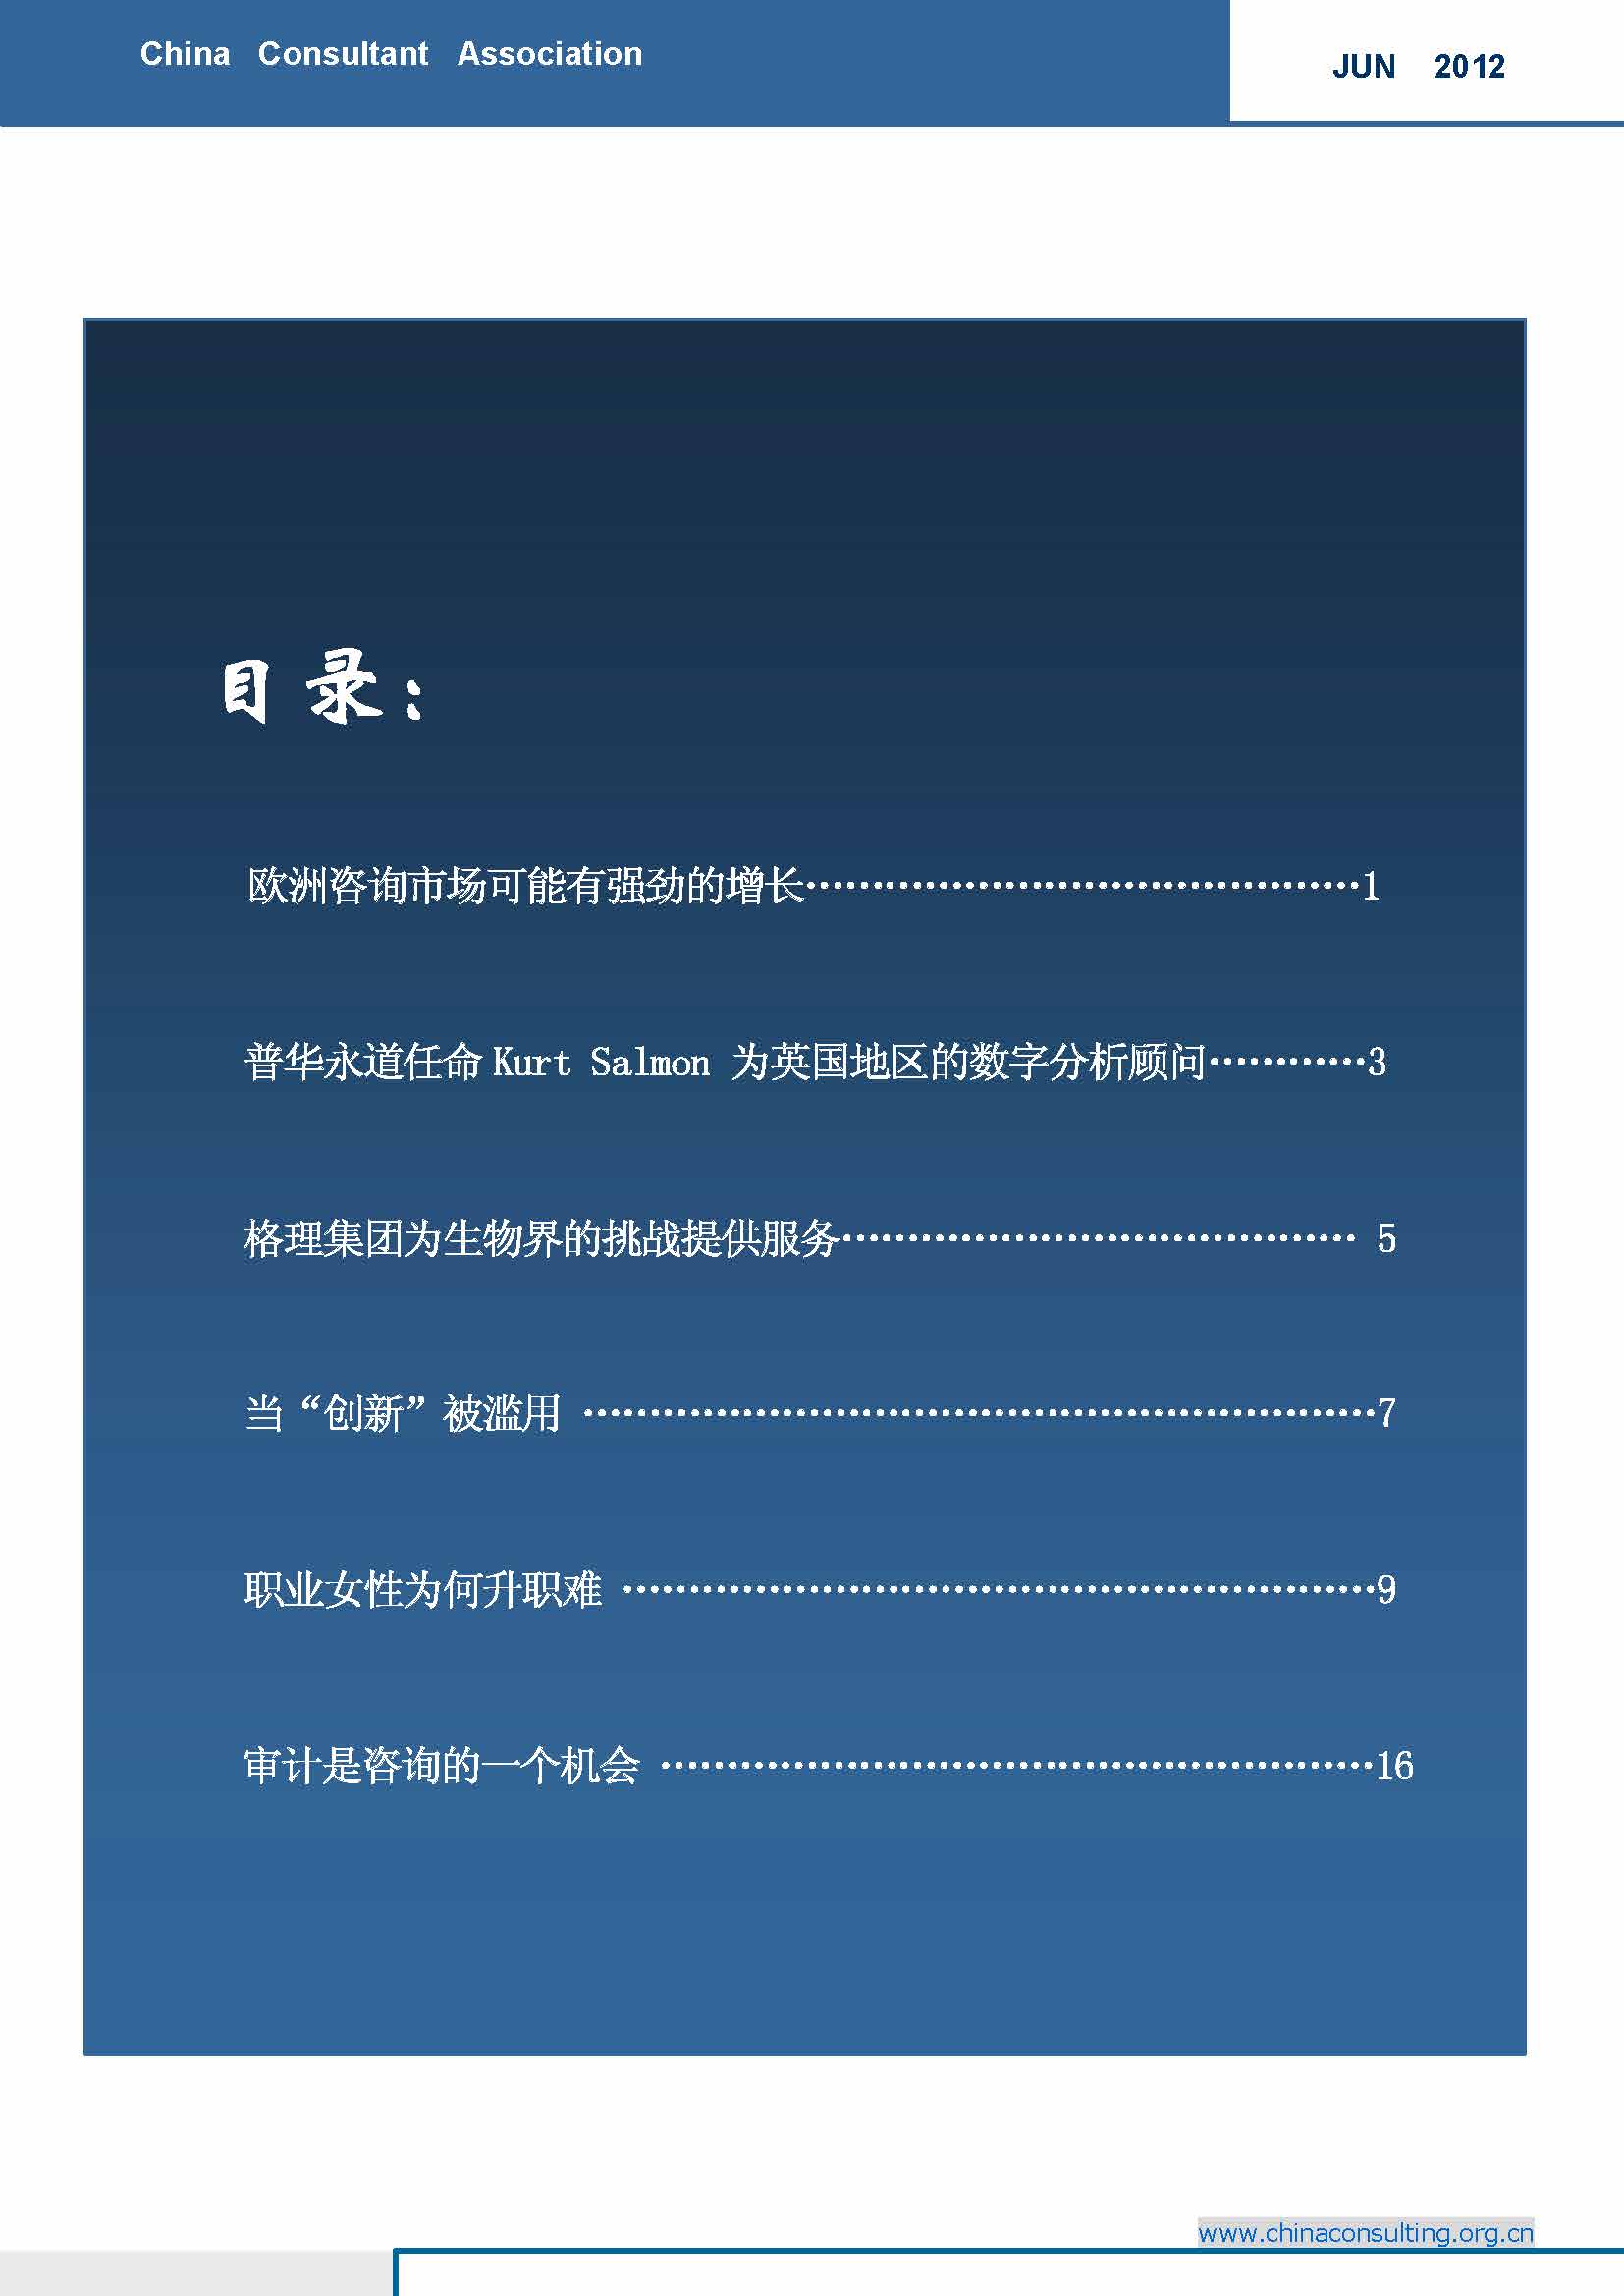 7中国科技咨询协会国际快讯（第七期）_页面_02.jpg